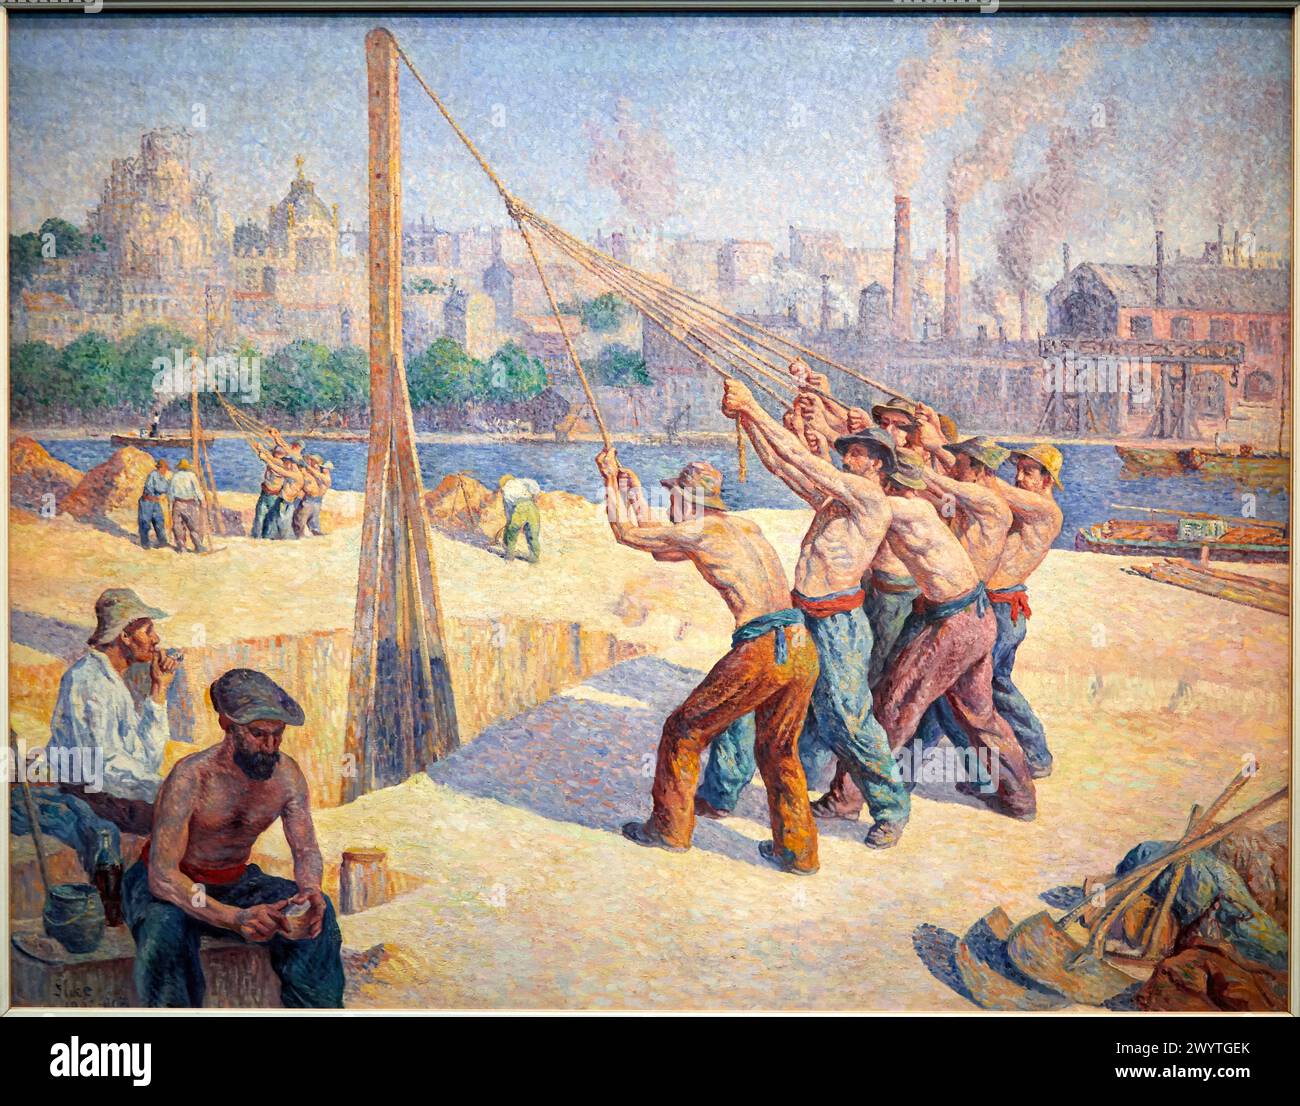 'Les batteurs de pieux', 1902-1903, Maximilien Luce, Musée d'Orsay, Paris, France, Europe Stock Photo